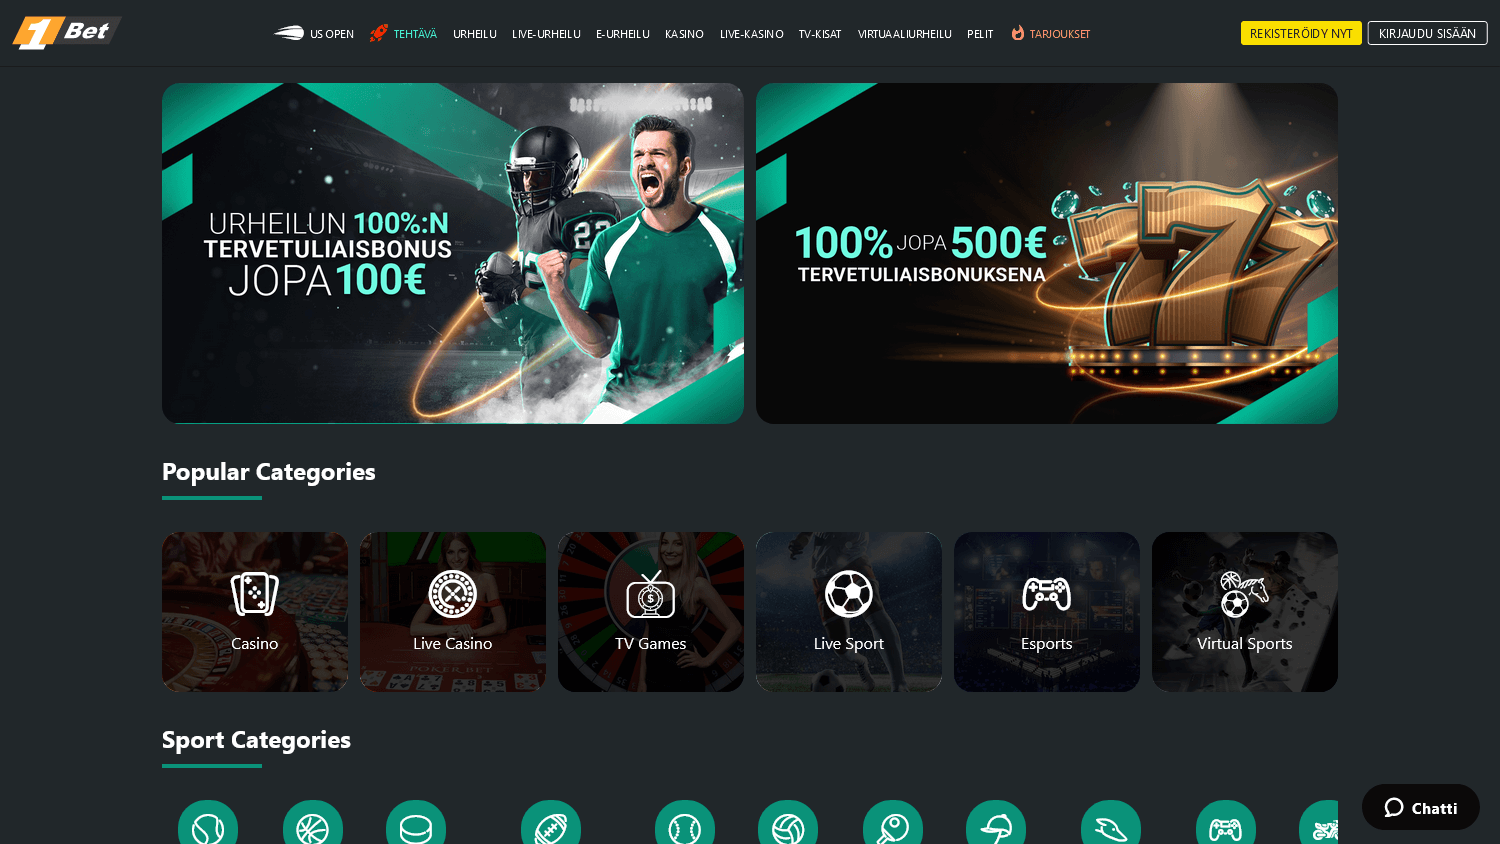 1bet_casino_homepage_desktop